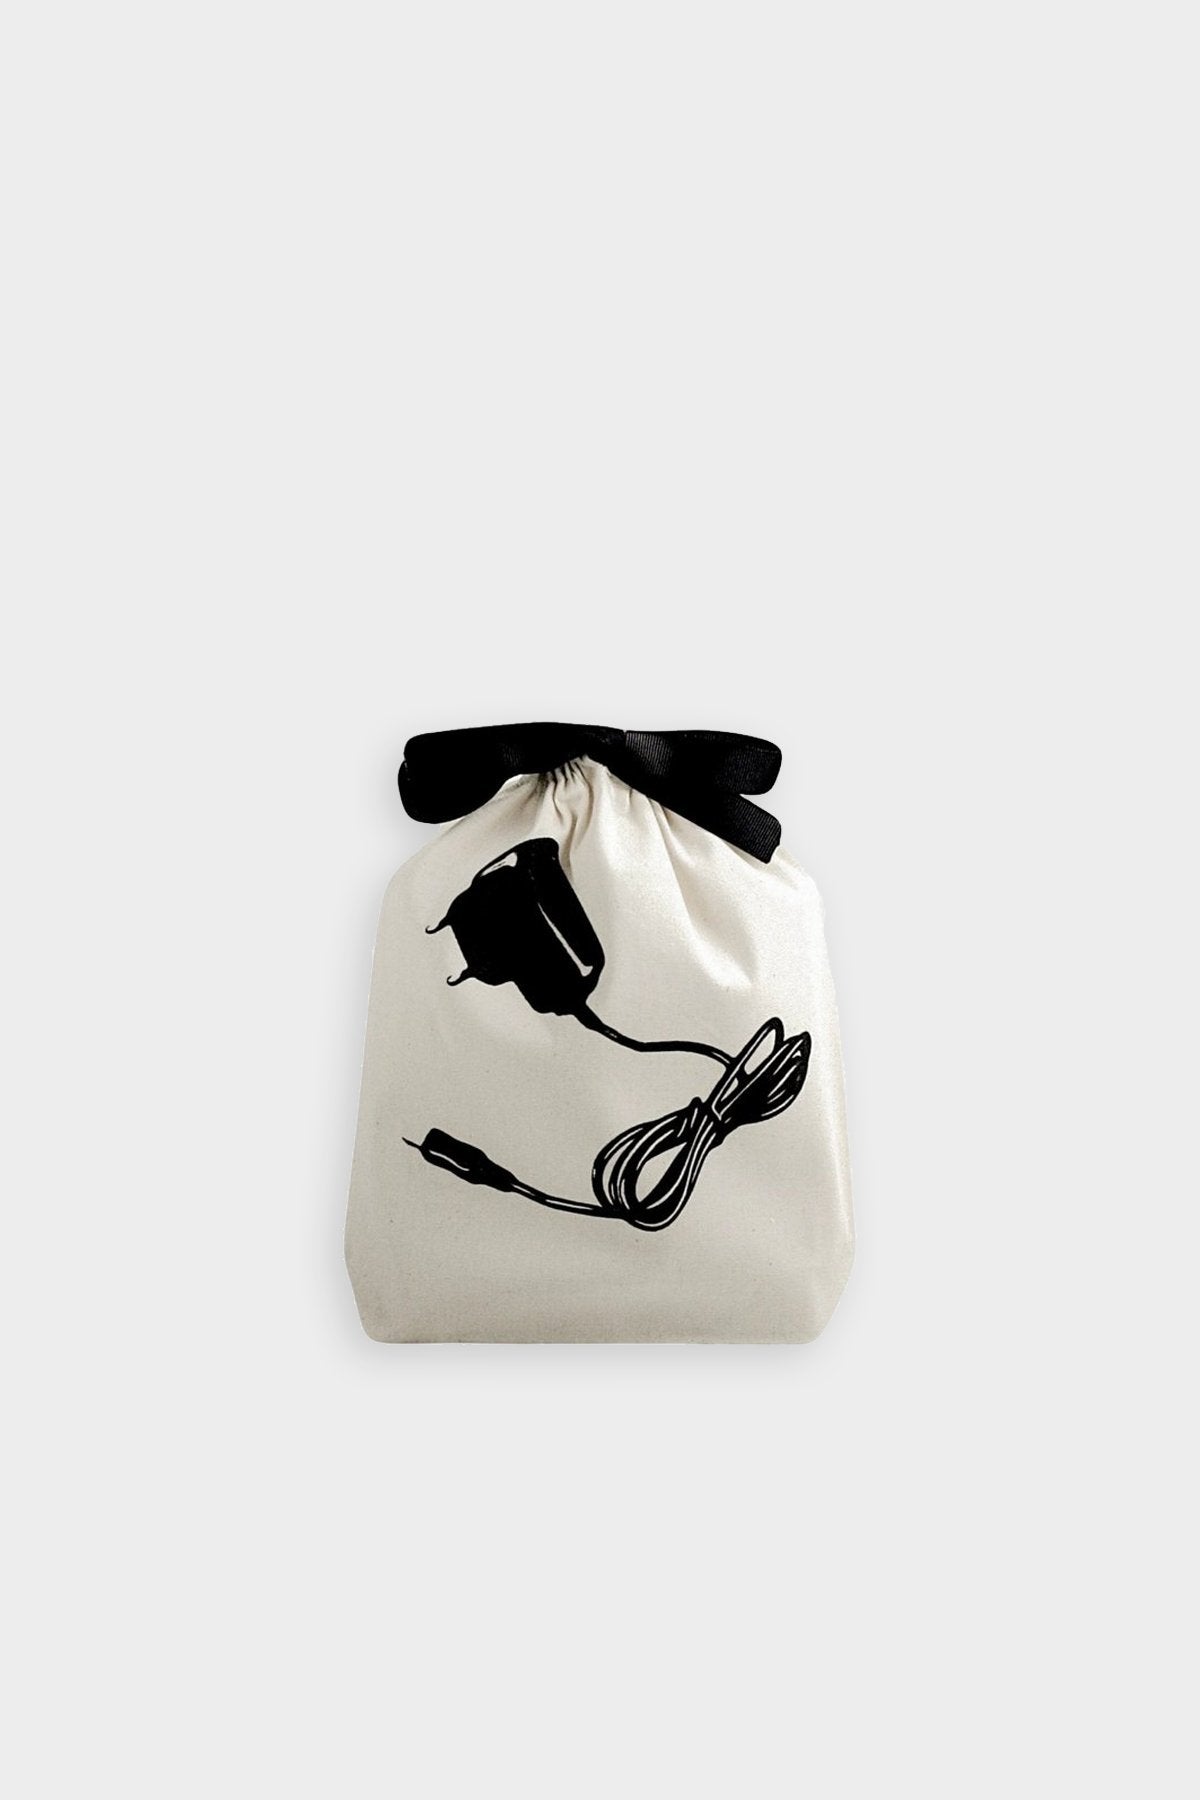 Charger Bag in Natural - shop-olivia.com